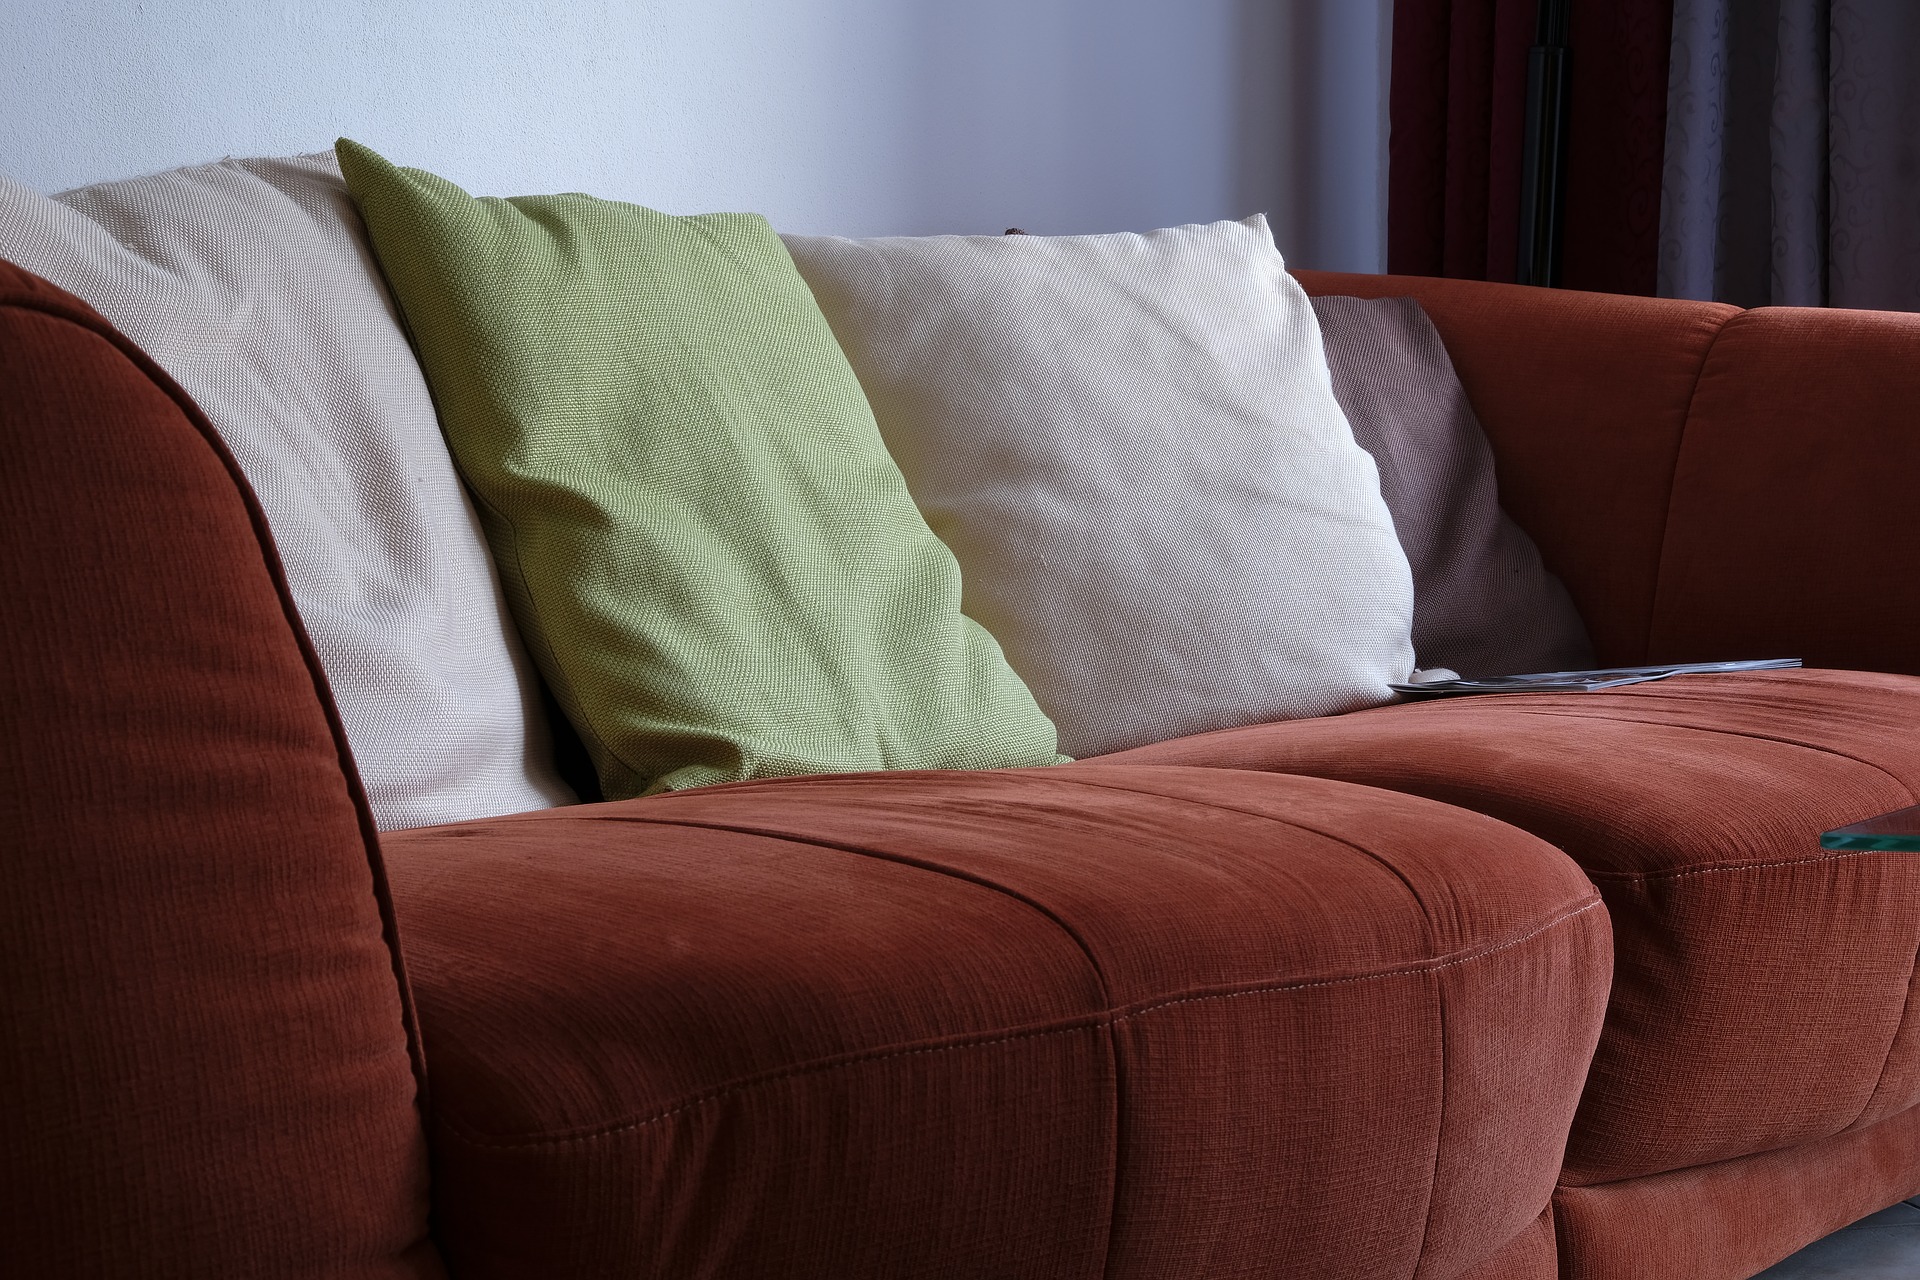 Sofá vinho com asmofadas brancas e verdes. Imagem ilustrativa do texto lavar sofá no Plano Piloto.